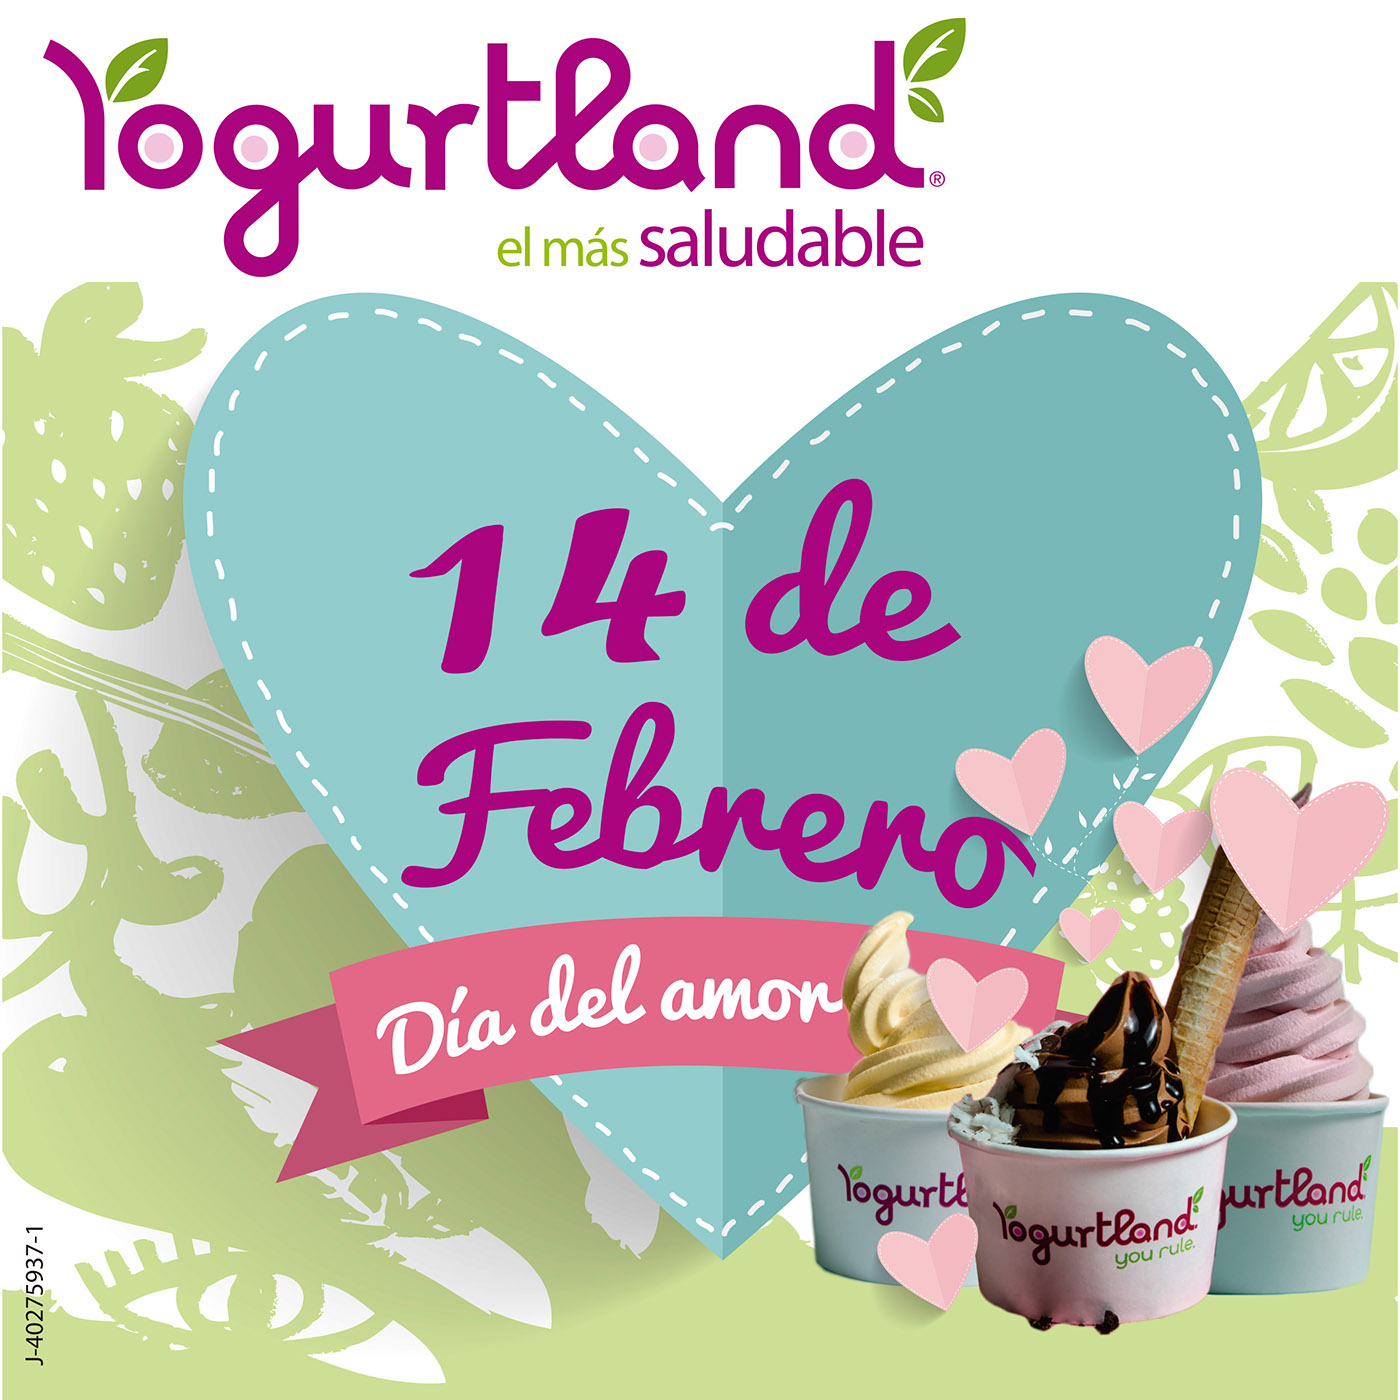 yogurtland diseño diseñografico Campaña helados yogurt publicidad Nintendo mario toad